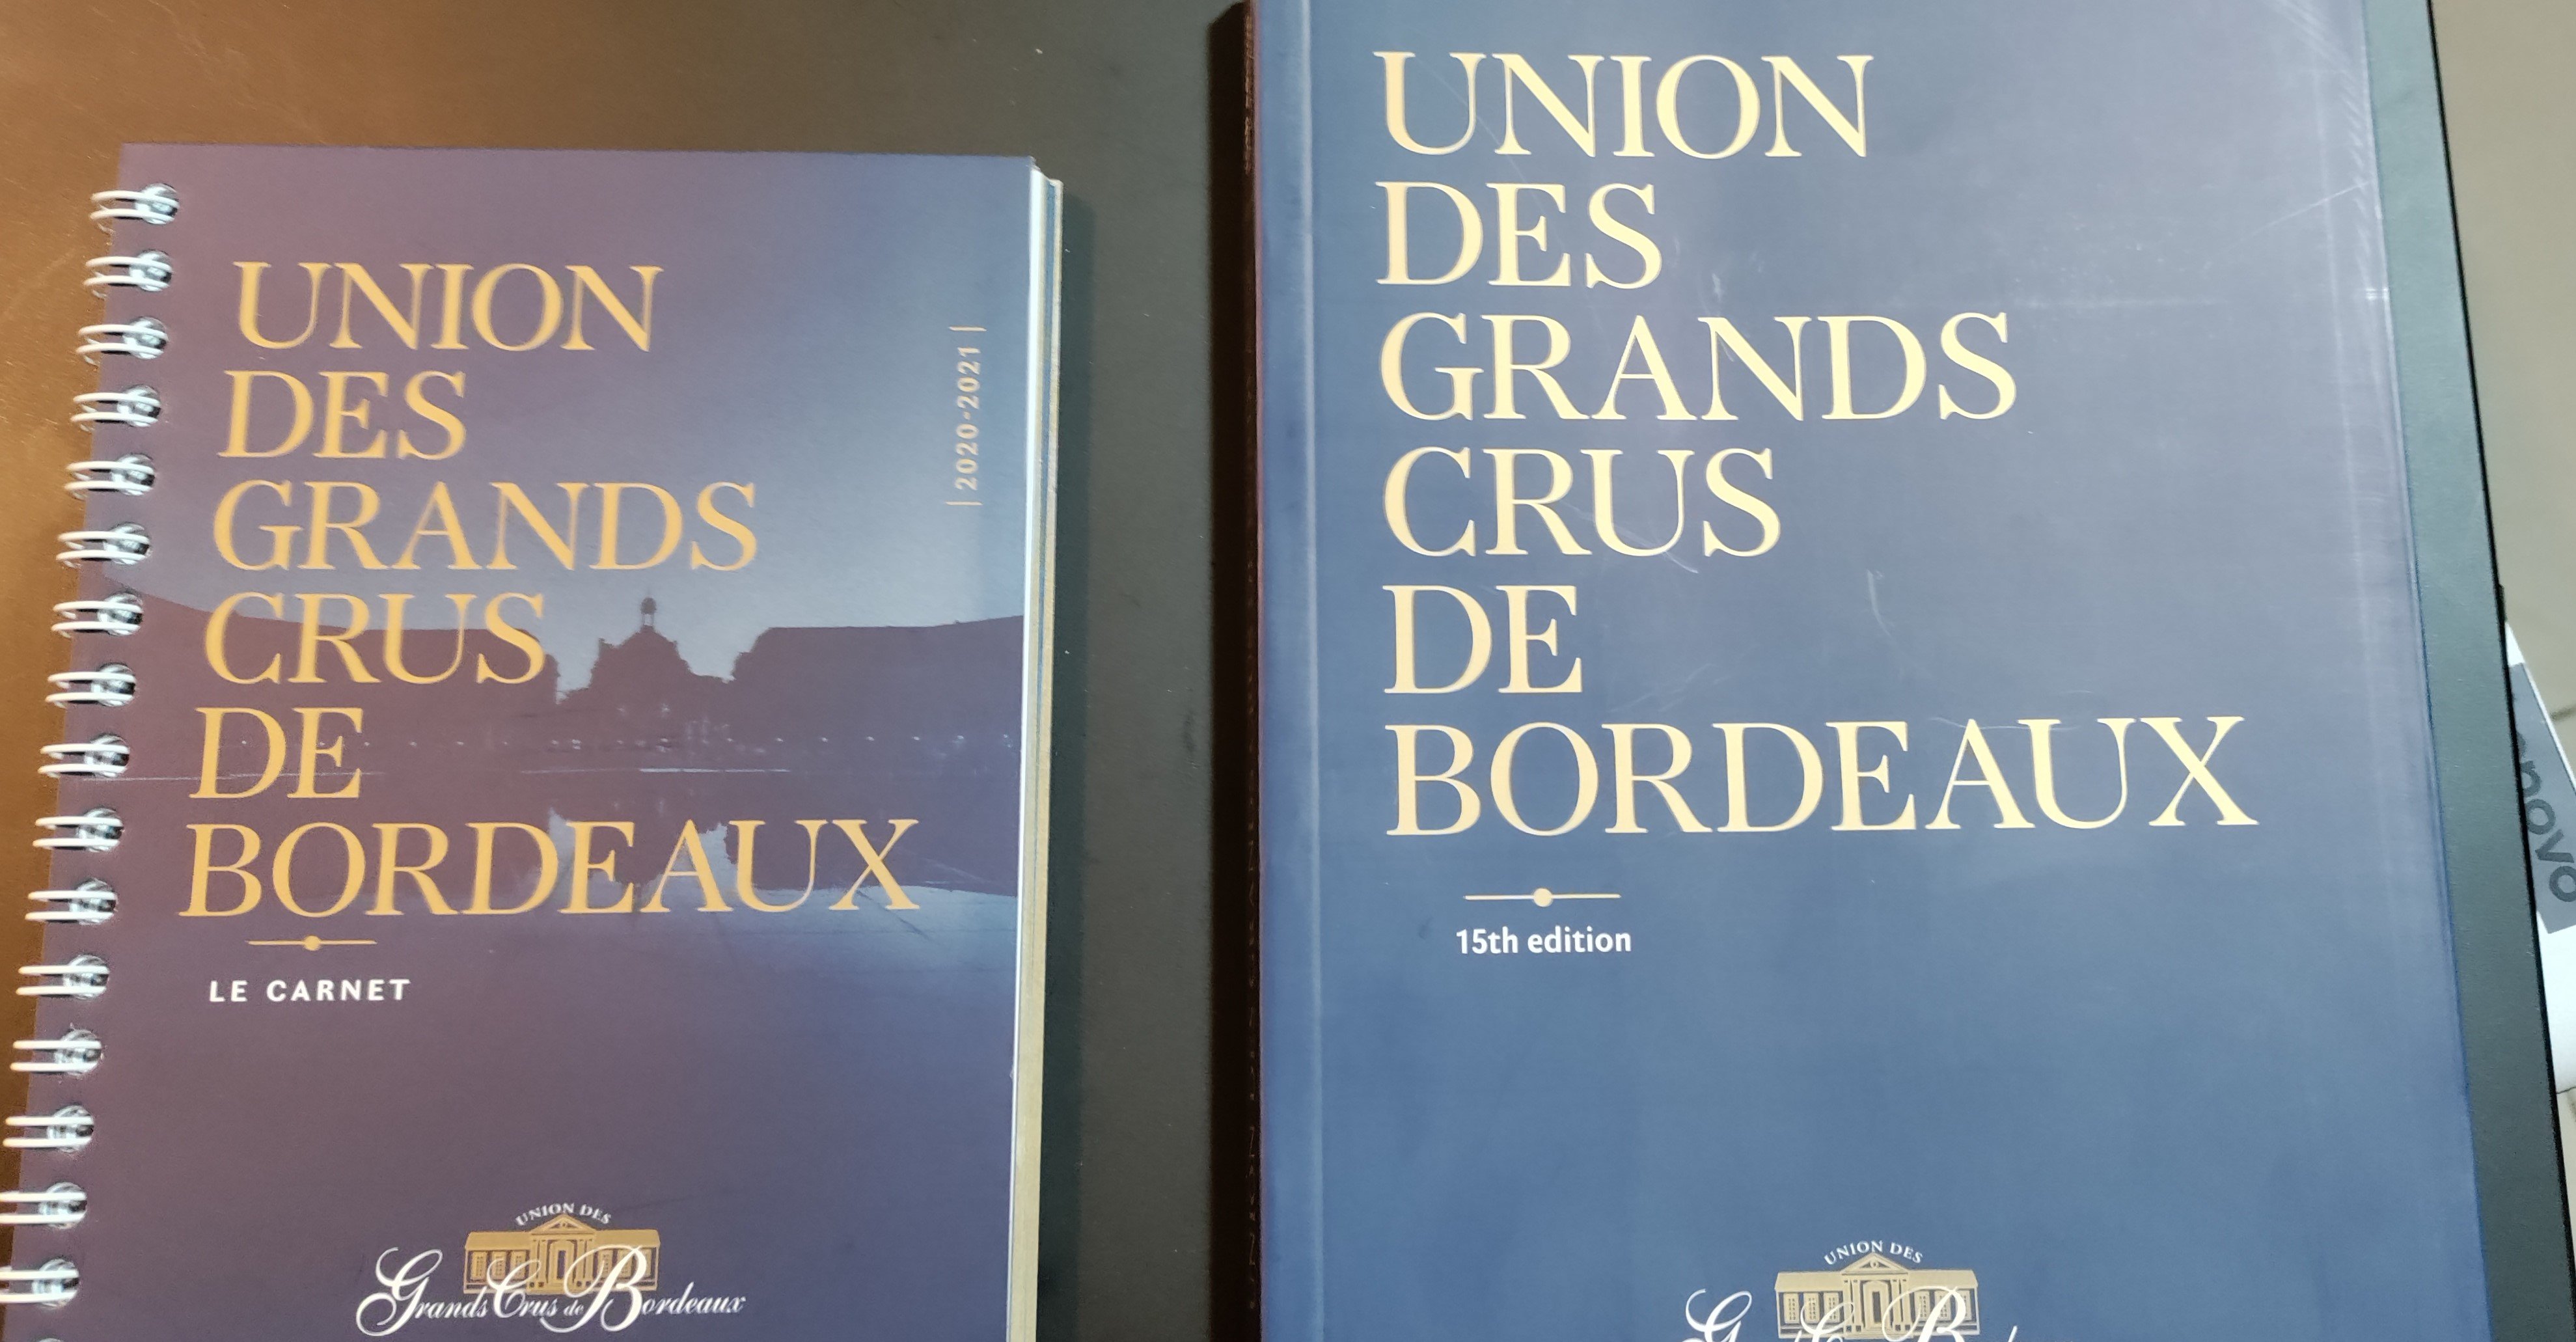 Bordeaux books.jpg